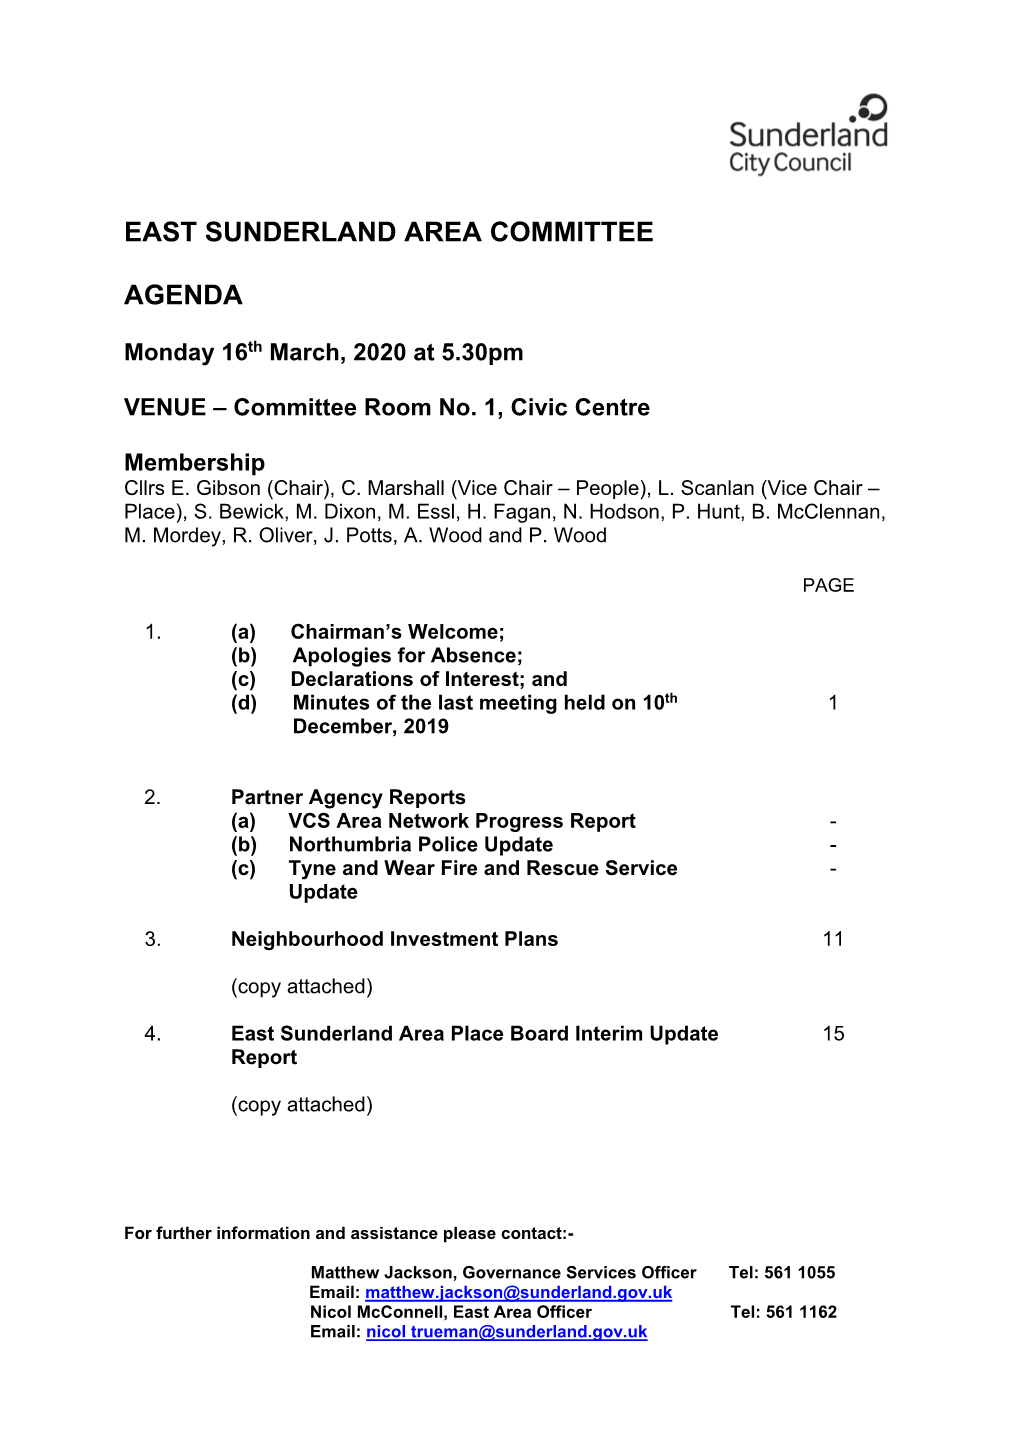 East Sunderland Area Committee Agenda